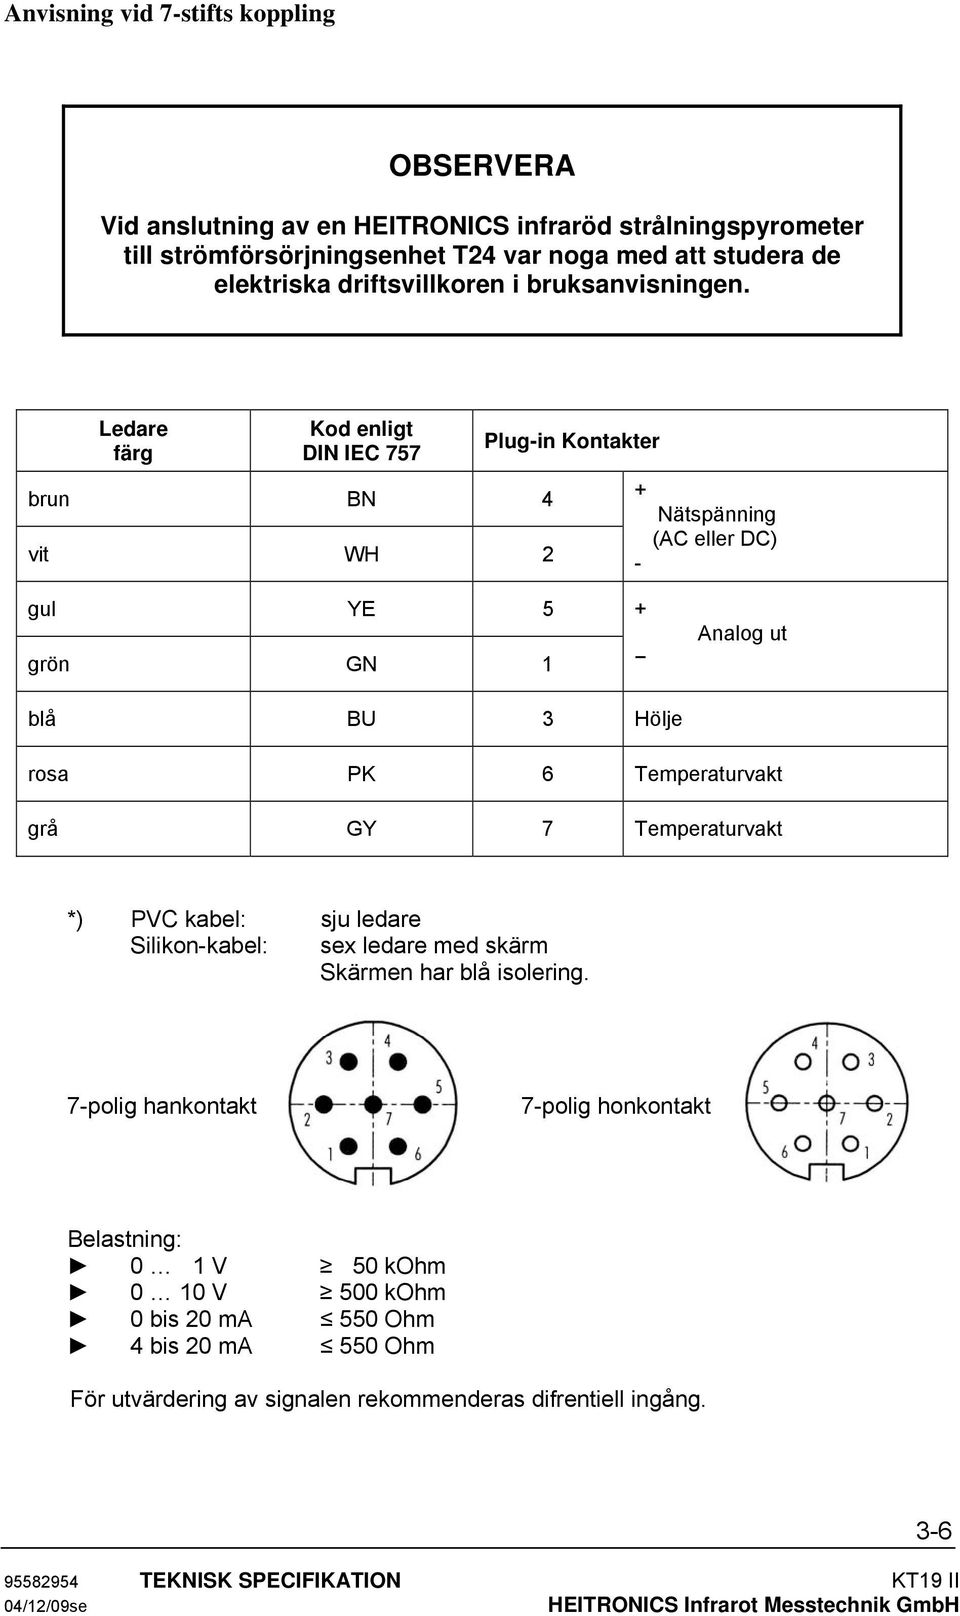 Ledare färg Kod enligt DIN IEC 757 brun BN 4 vit WH 2 Plug-in Kontakter + - Nätspänning (AC eller DC) gul YE 5 grön GN 1 + Analog ut blå BU 3 Hölje rosa PK 6 Temperaturvakt grå GY 7